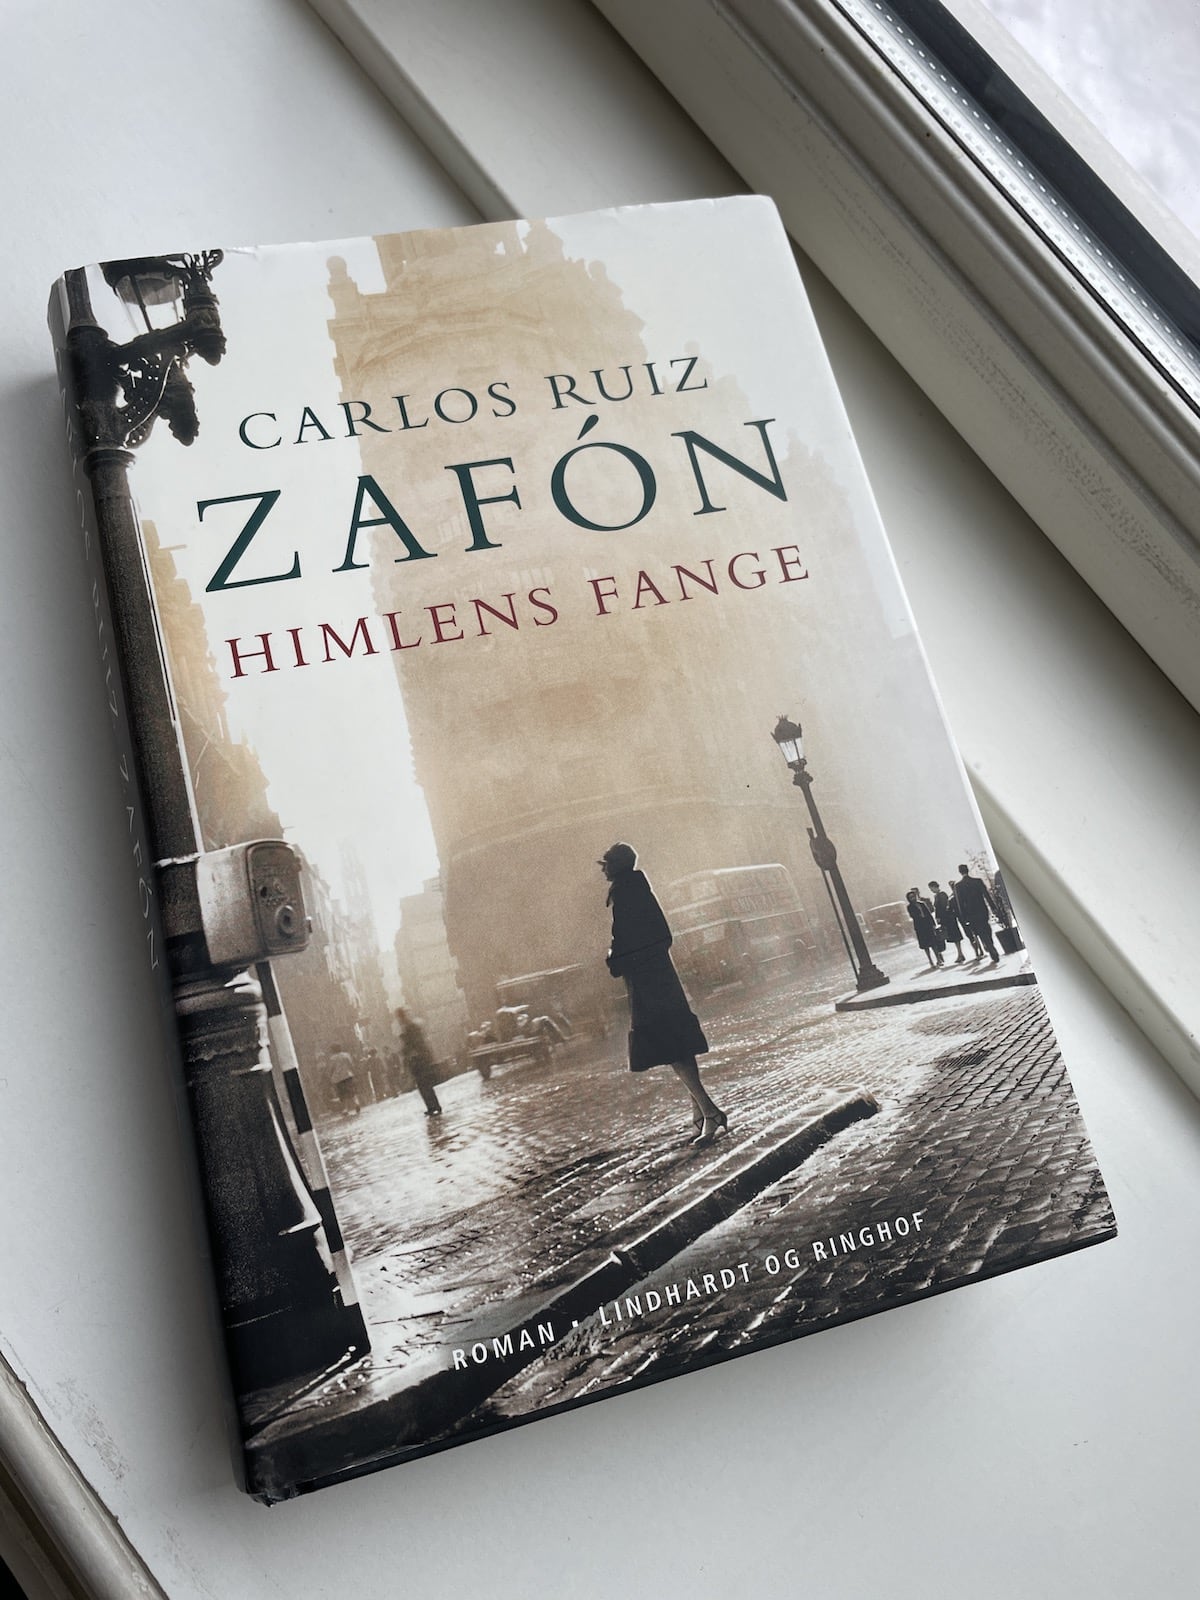 Himlens fange, Carlos Ruiz Zafón, brugt bog